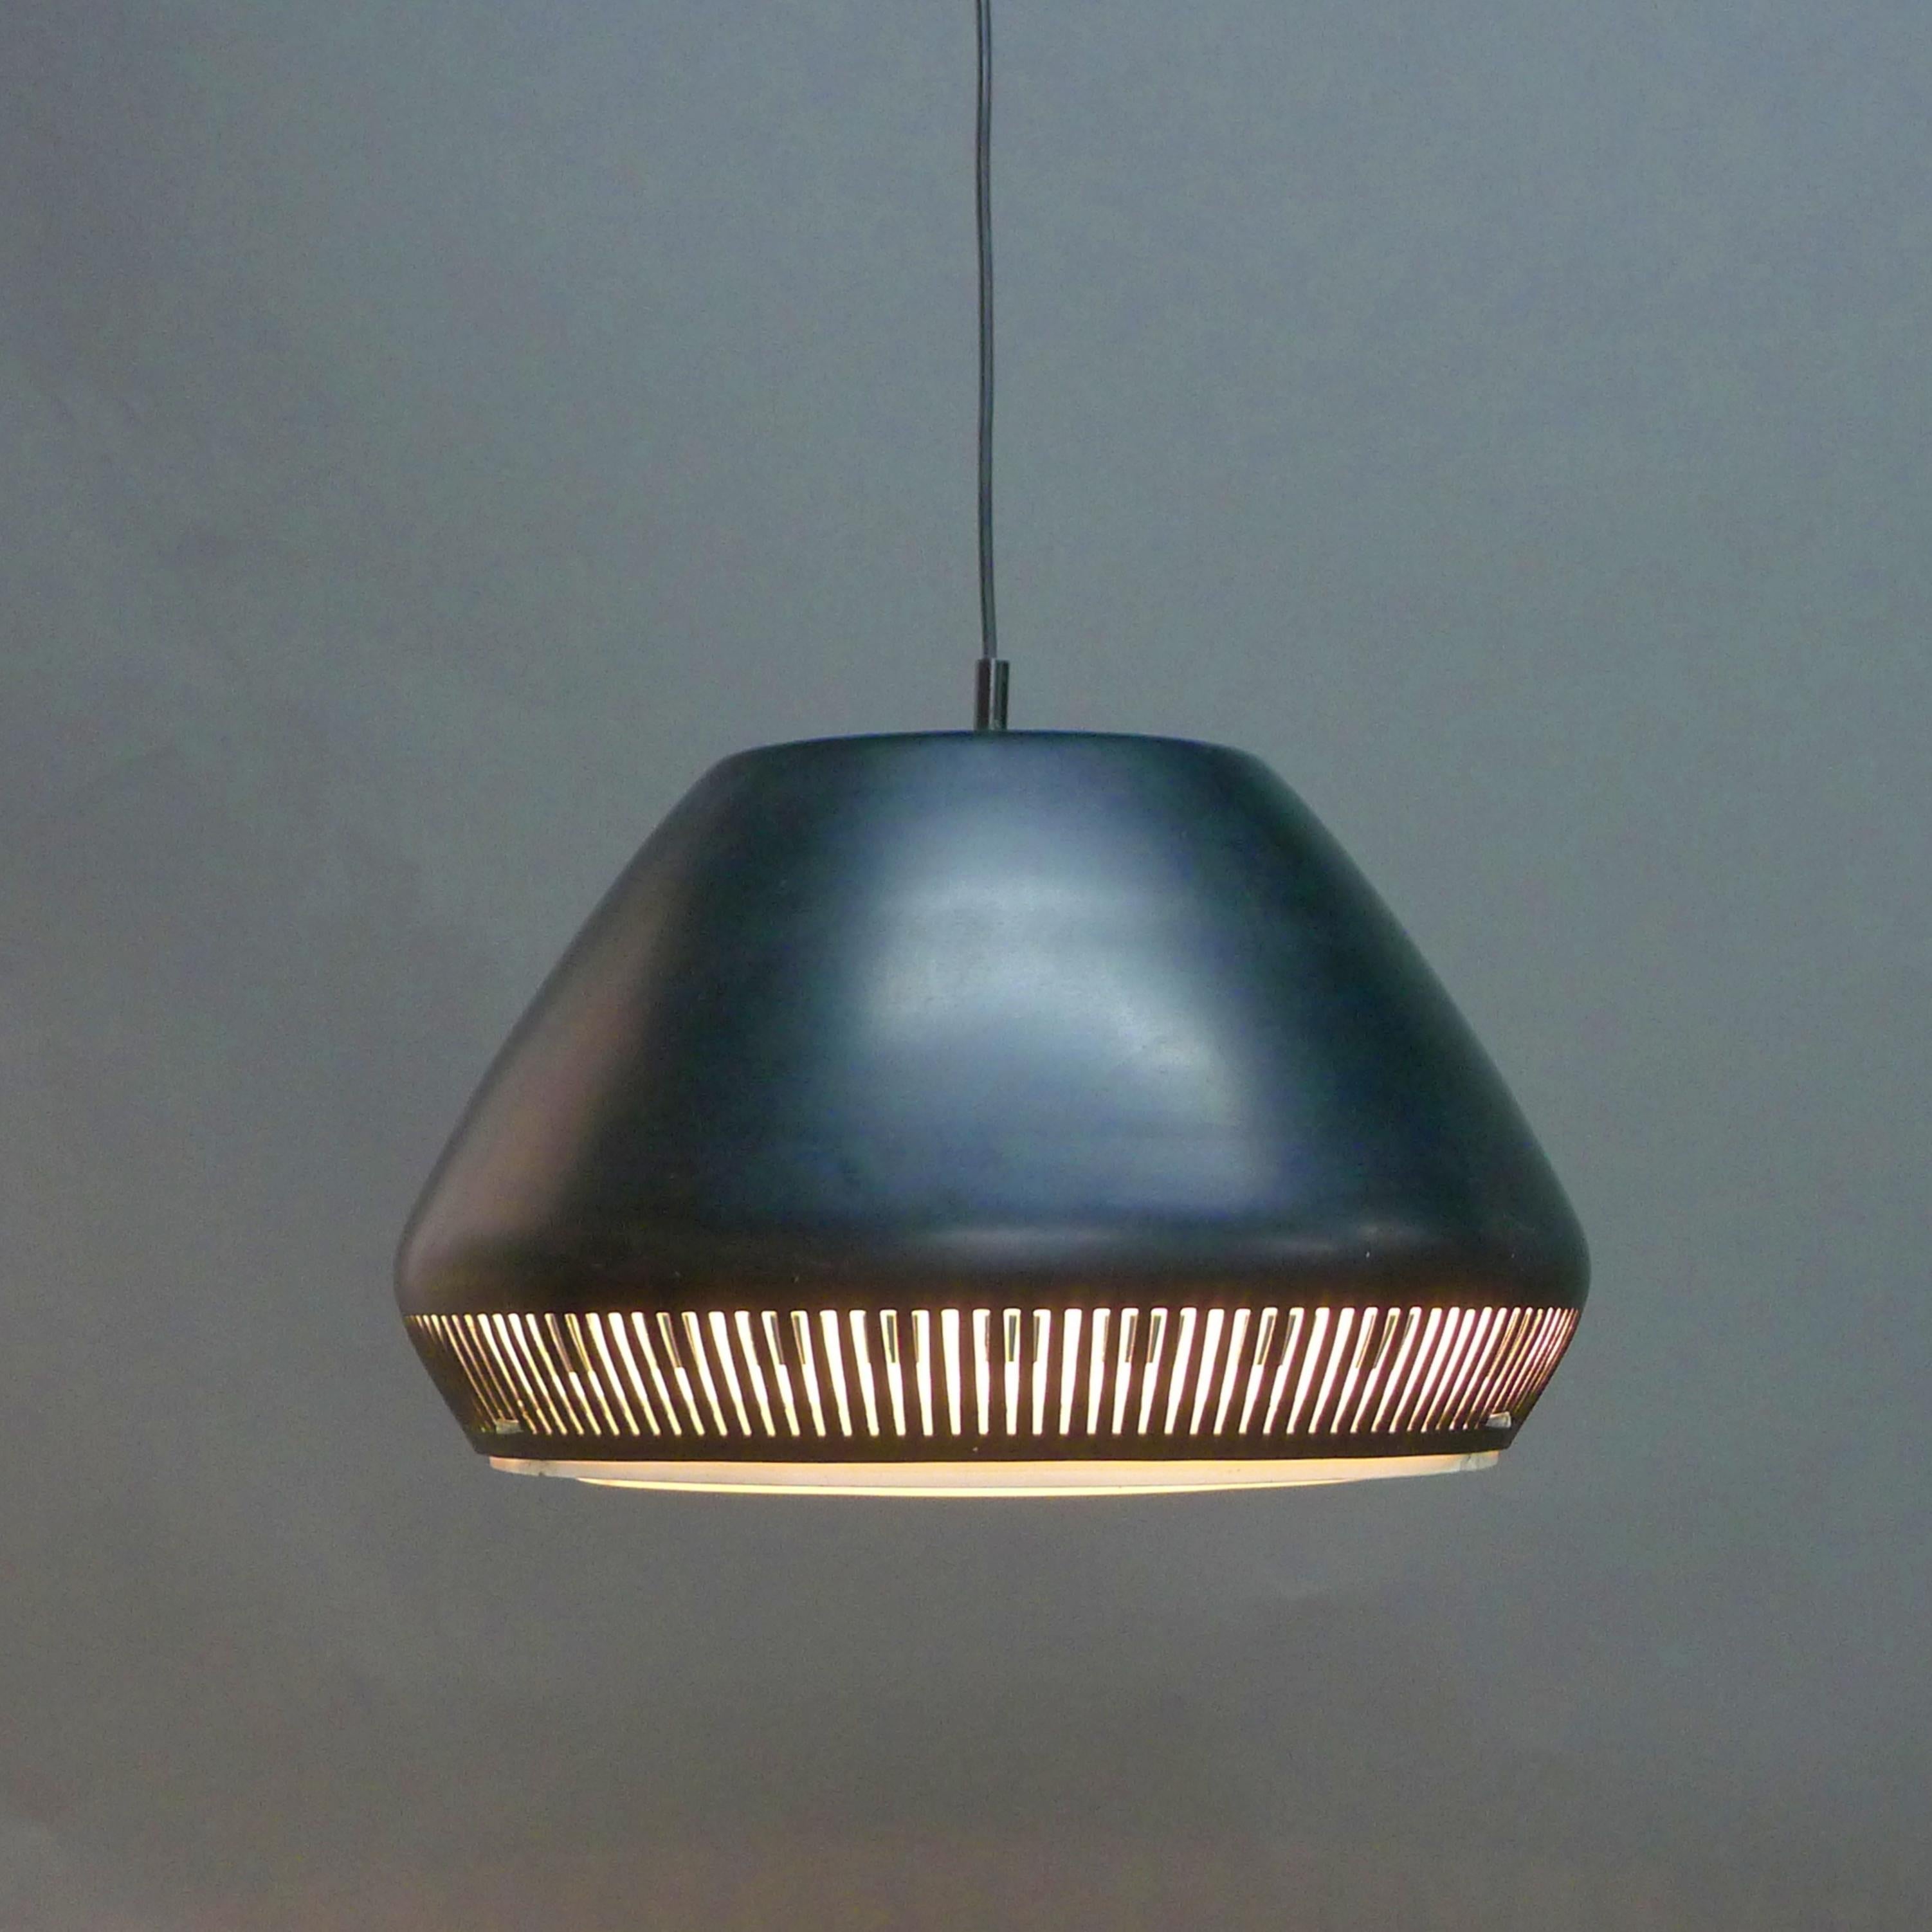 Stilvolle Pendelleuchte, zugeschrieben Gio Ponti für Greco Illuminazione, Italien 1950er Jahre

Schwarz emaillierter, gebogener Metallschirm mit integriertem Diffusor aus konzentrischen, weiß emaillierten Metallringen, die einen schönen Lichteffekt